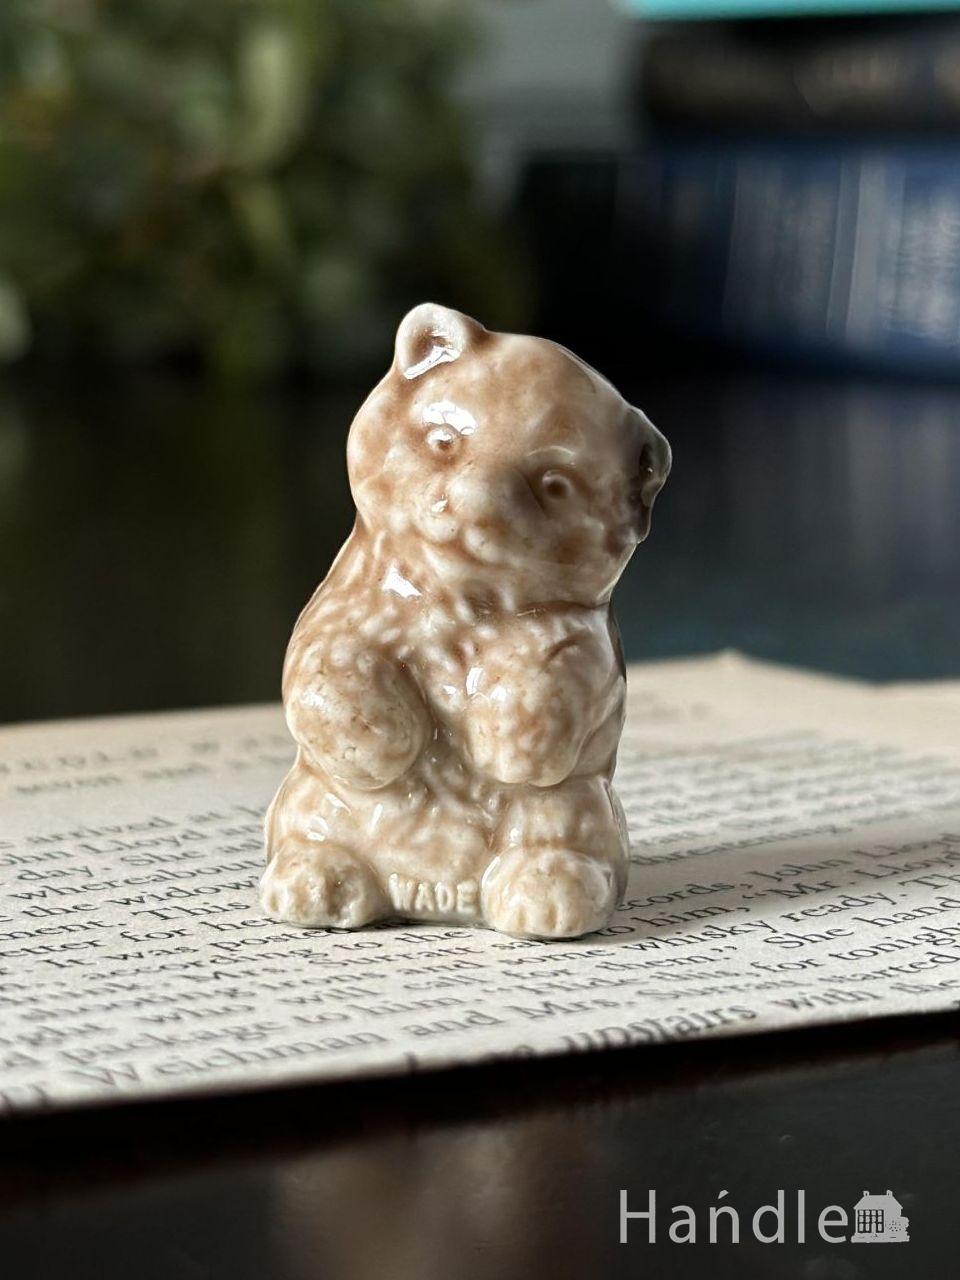 イギリスで見つけたWADE社のビンテージ陶器、Whimsiesシリーズのフィギア（子熊） (m-7490-z)